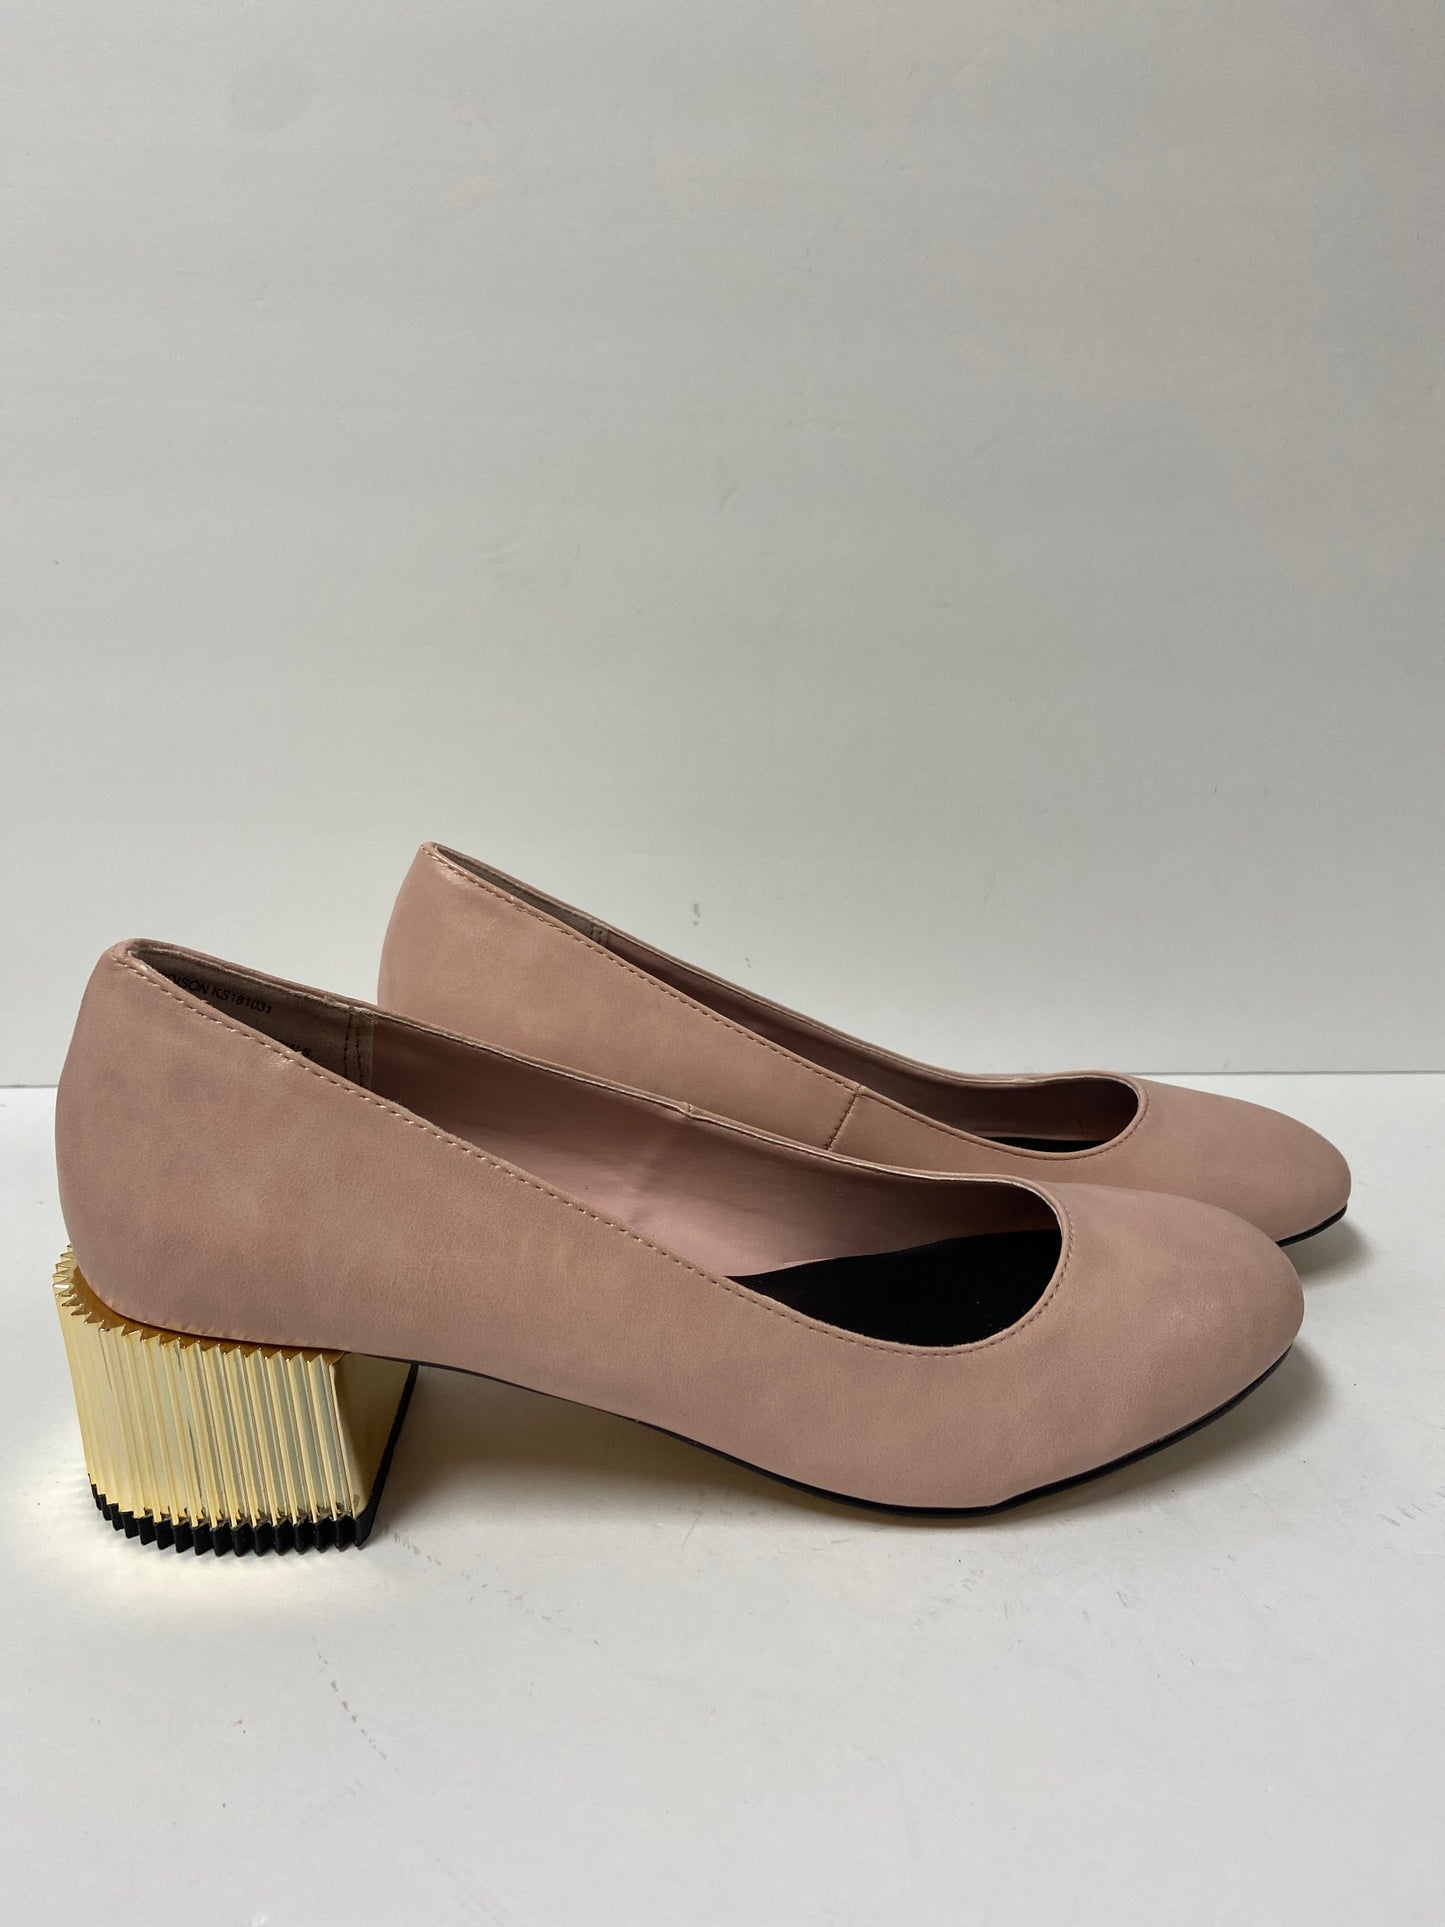 Shoes Heels Block By Kensie  Size: 5.5